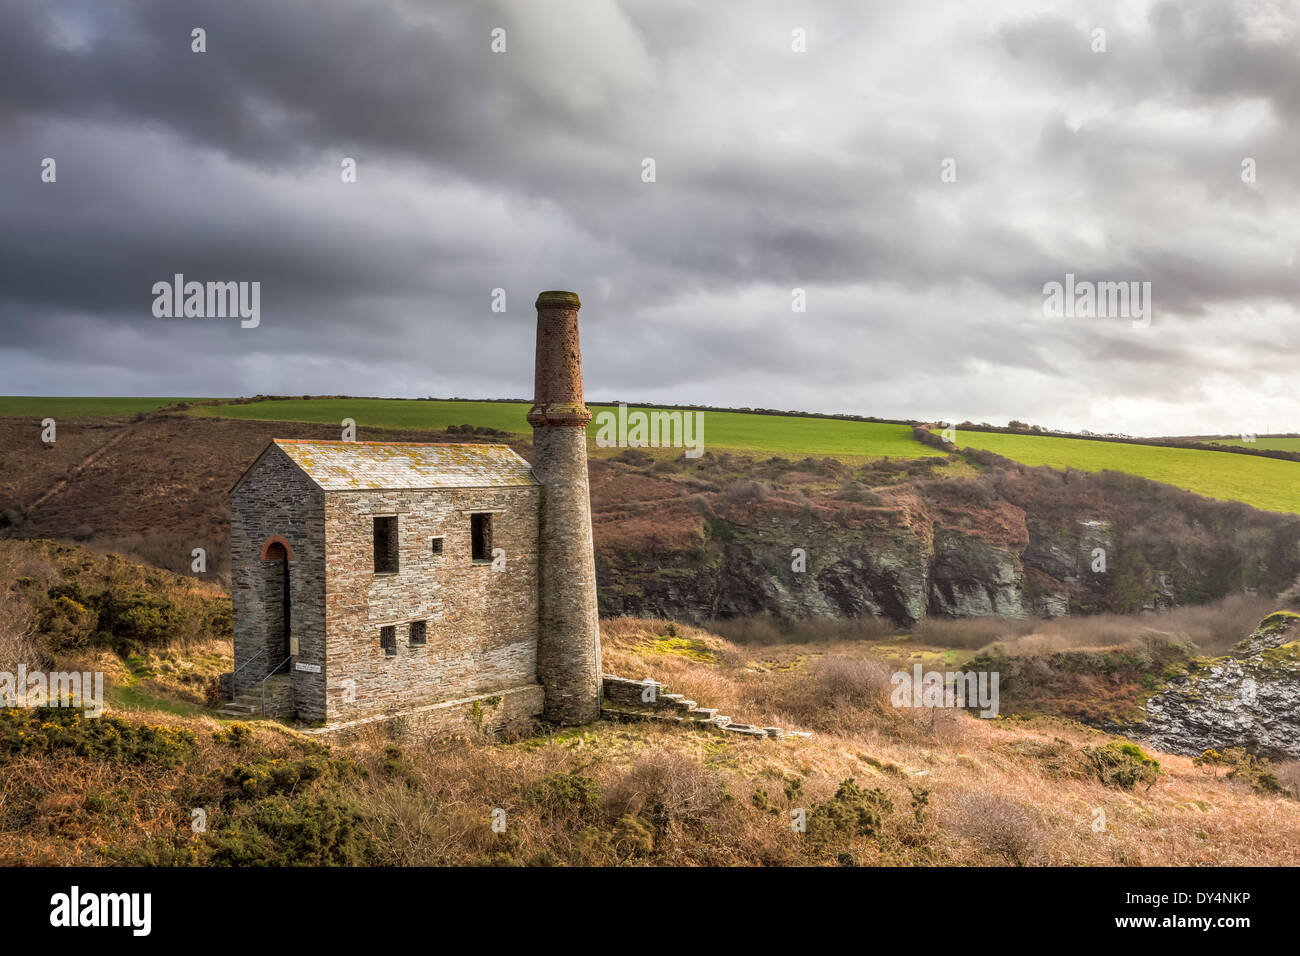 Abandoned_Cornish_engine_house_at_Prince